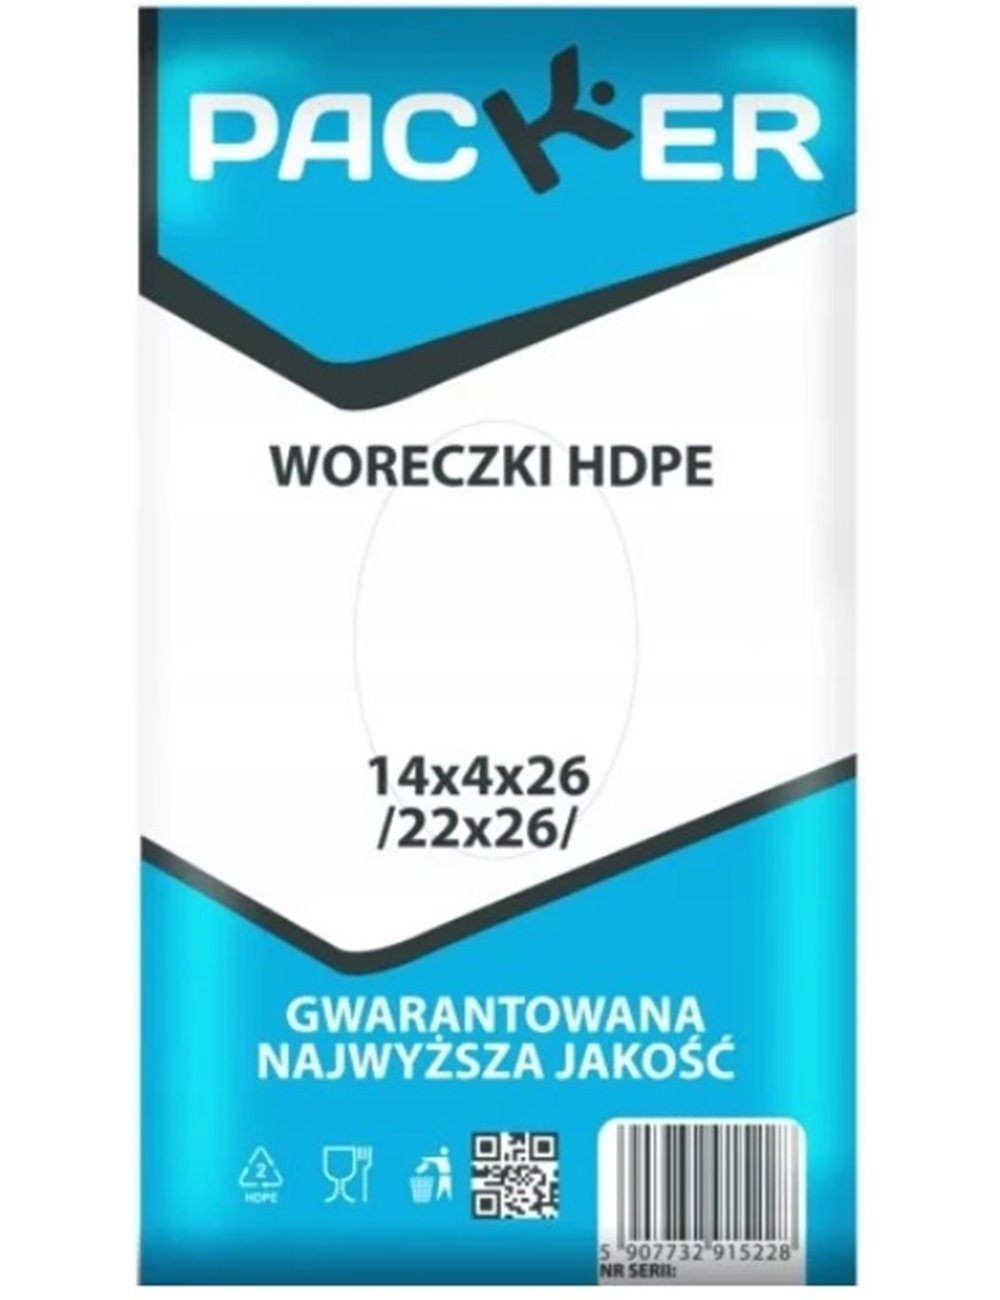 Woreczki Hdpe 14x4x26x(22x26) 800 szt